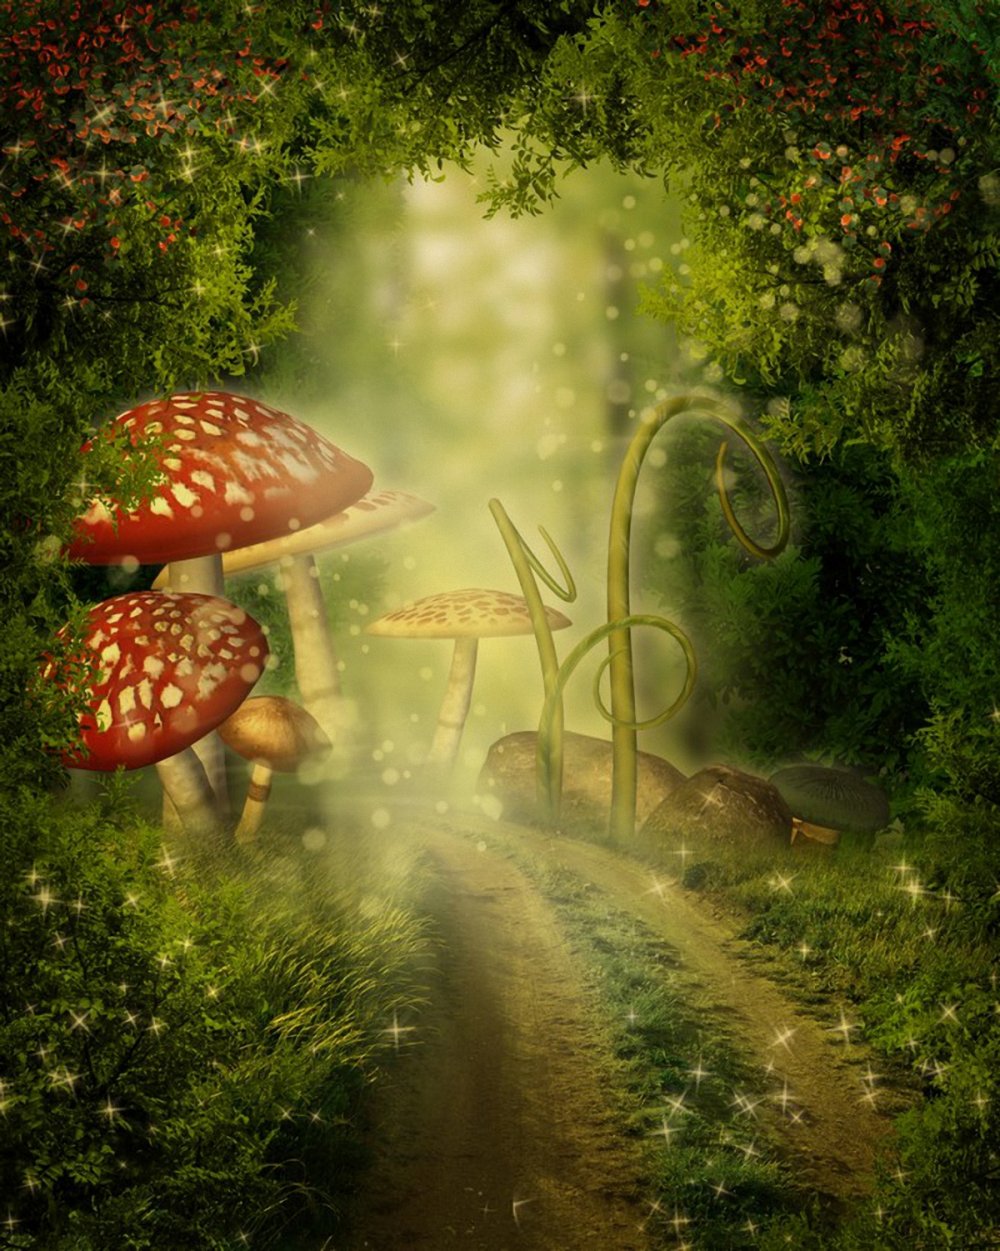 Волшебные грибы